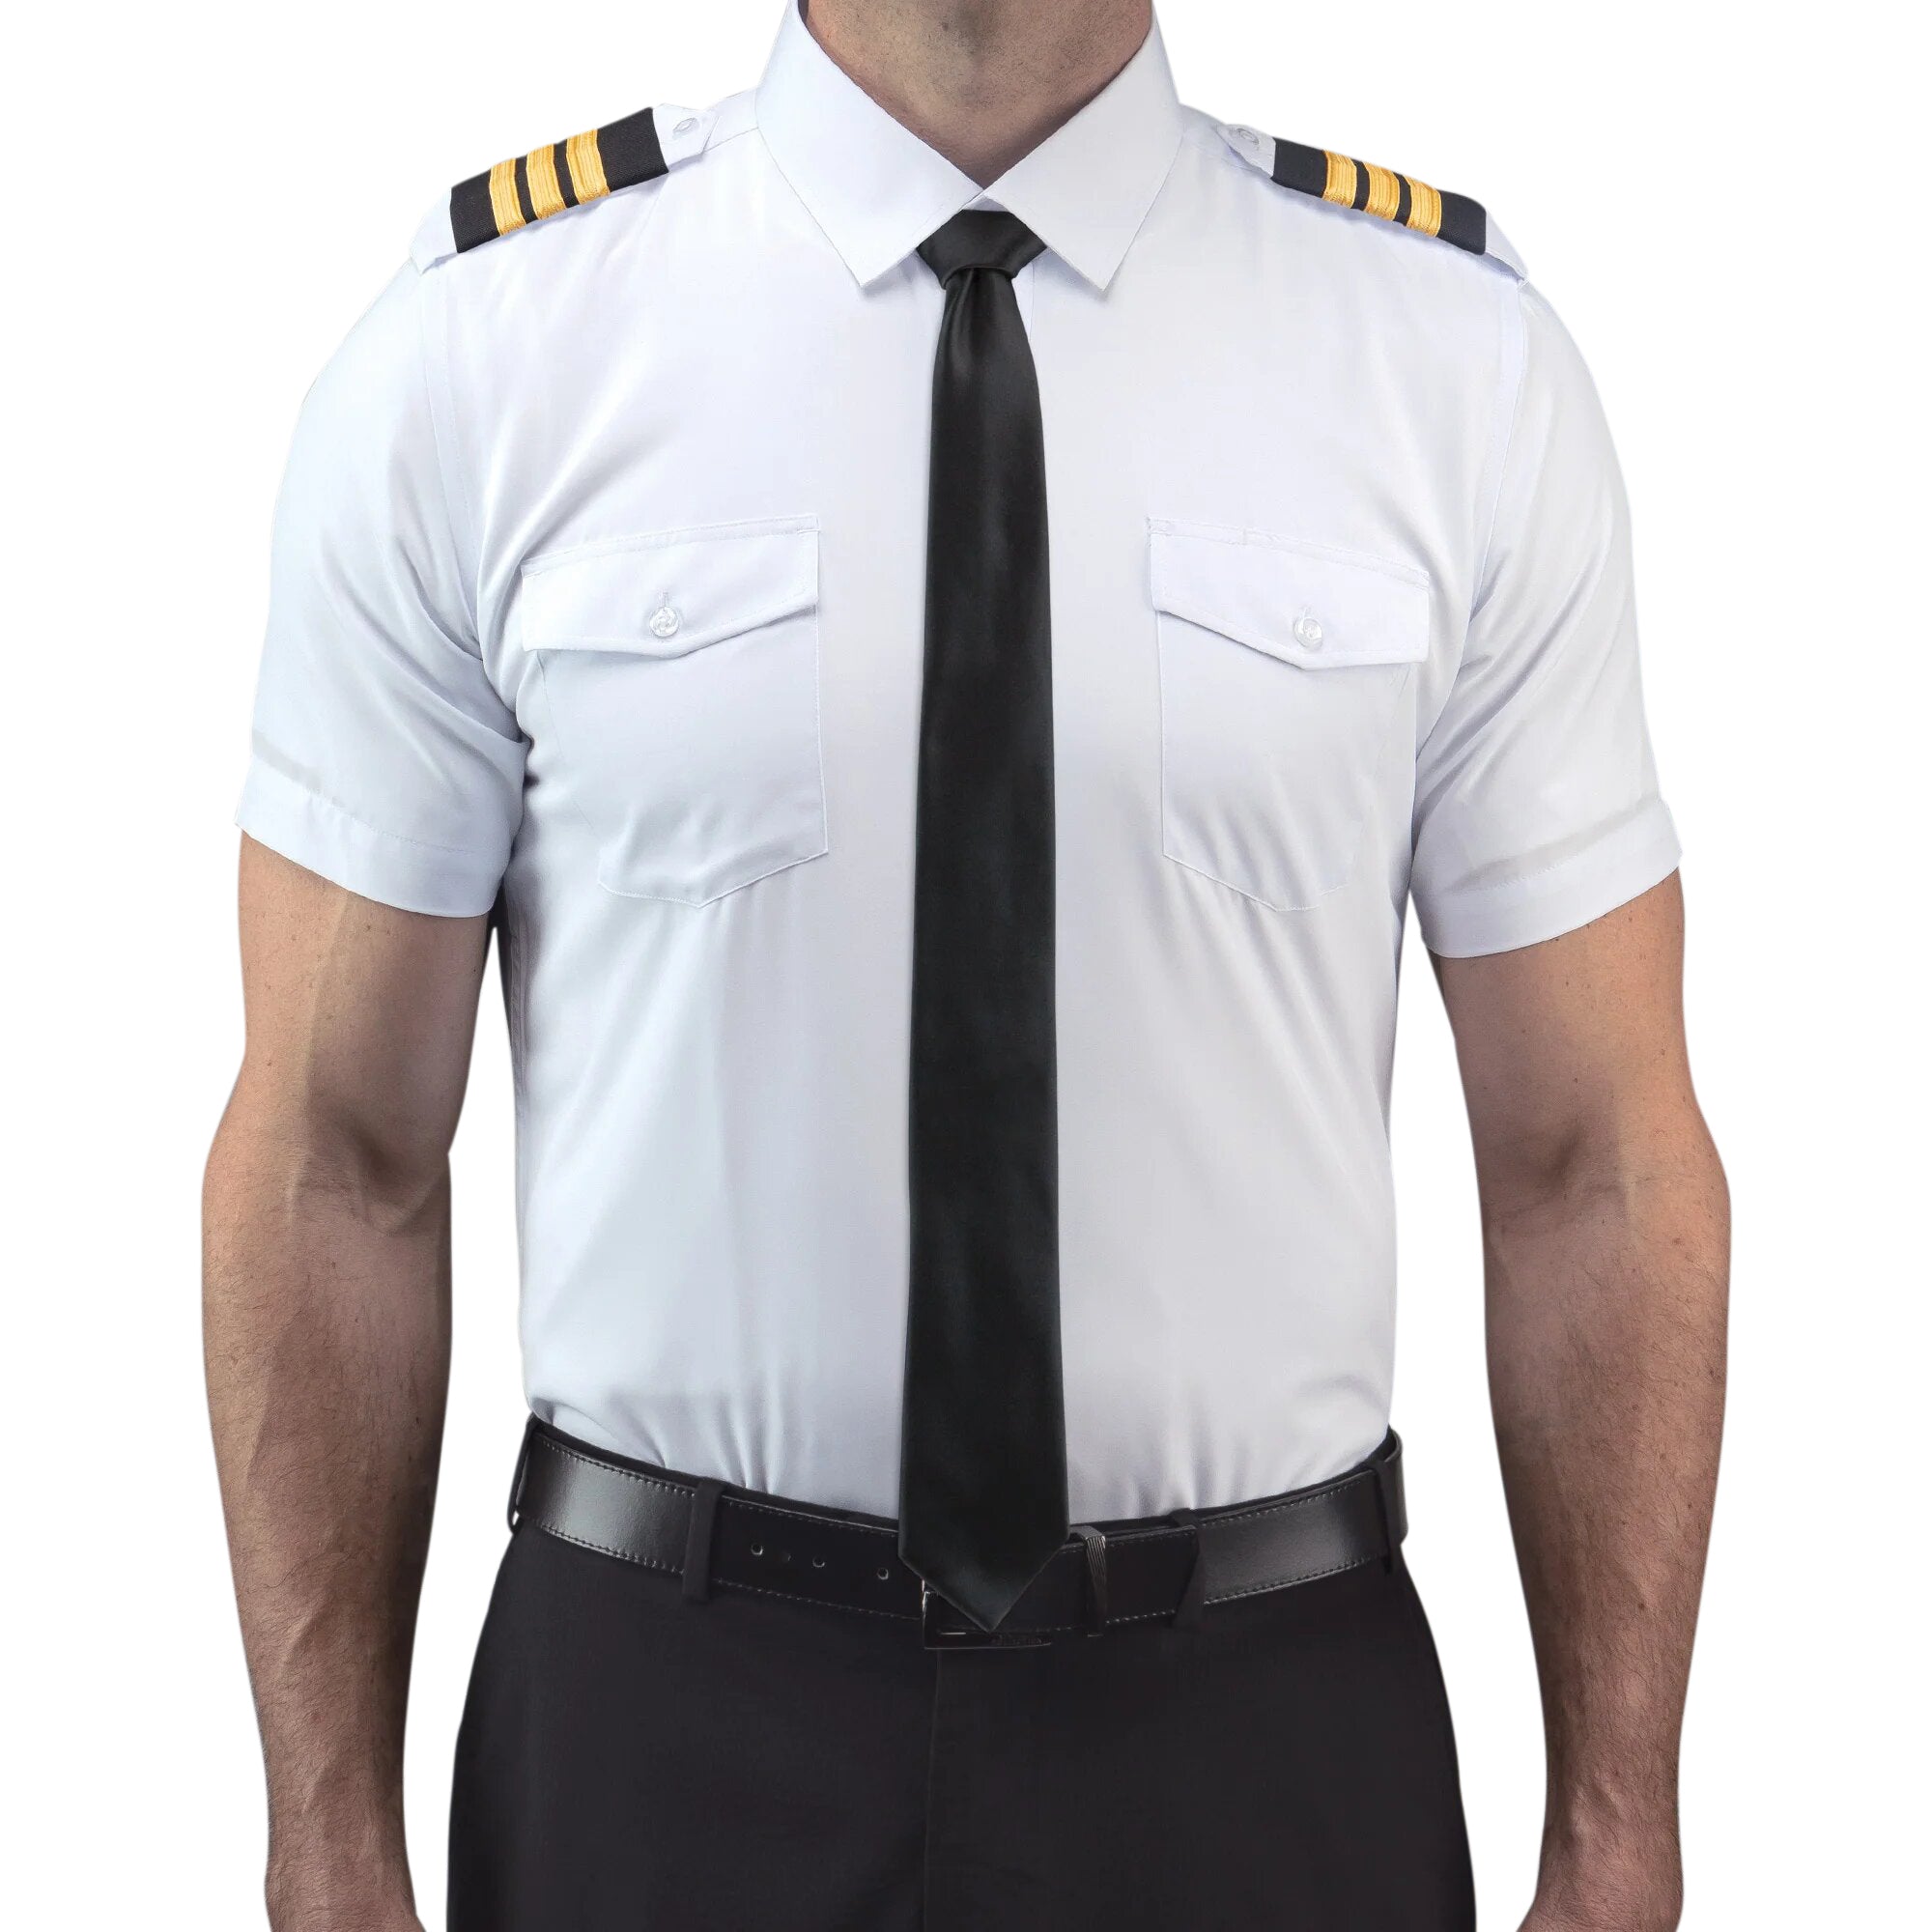 Lift Aviation Flextech Professional Pilot Short Sleeve Shirt - PilotMall.com